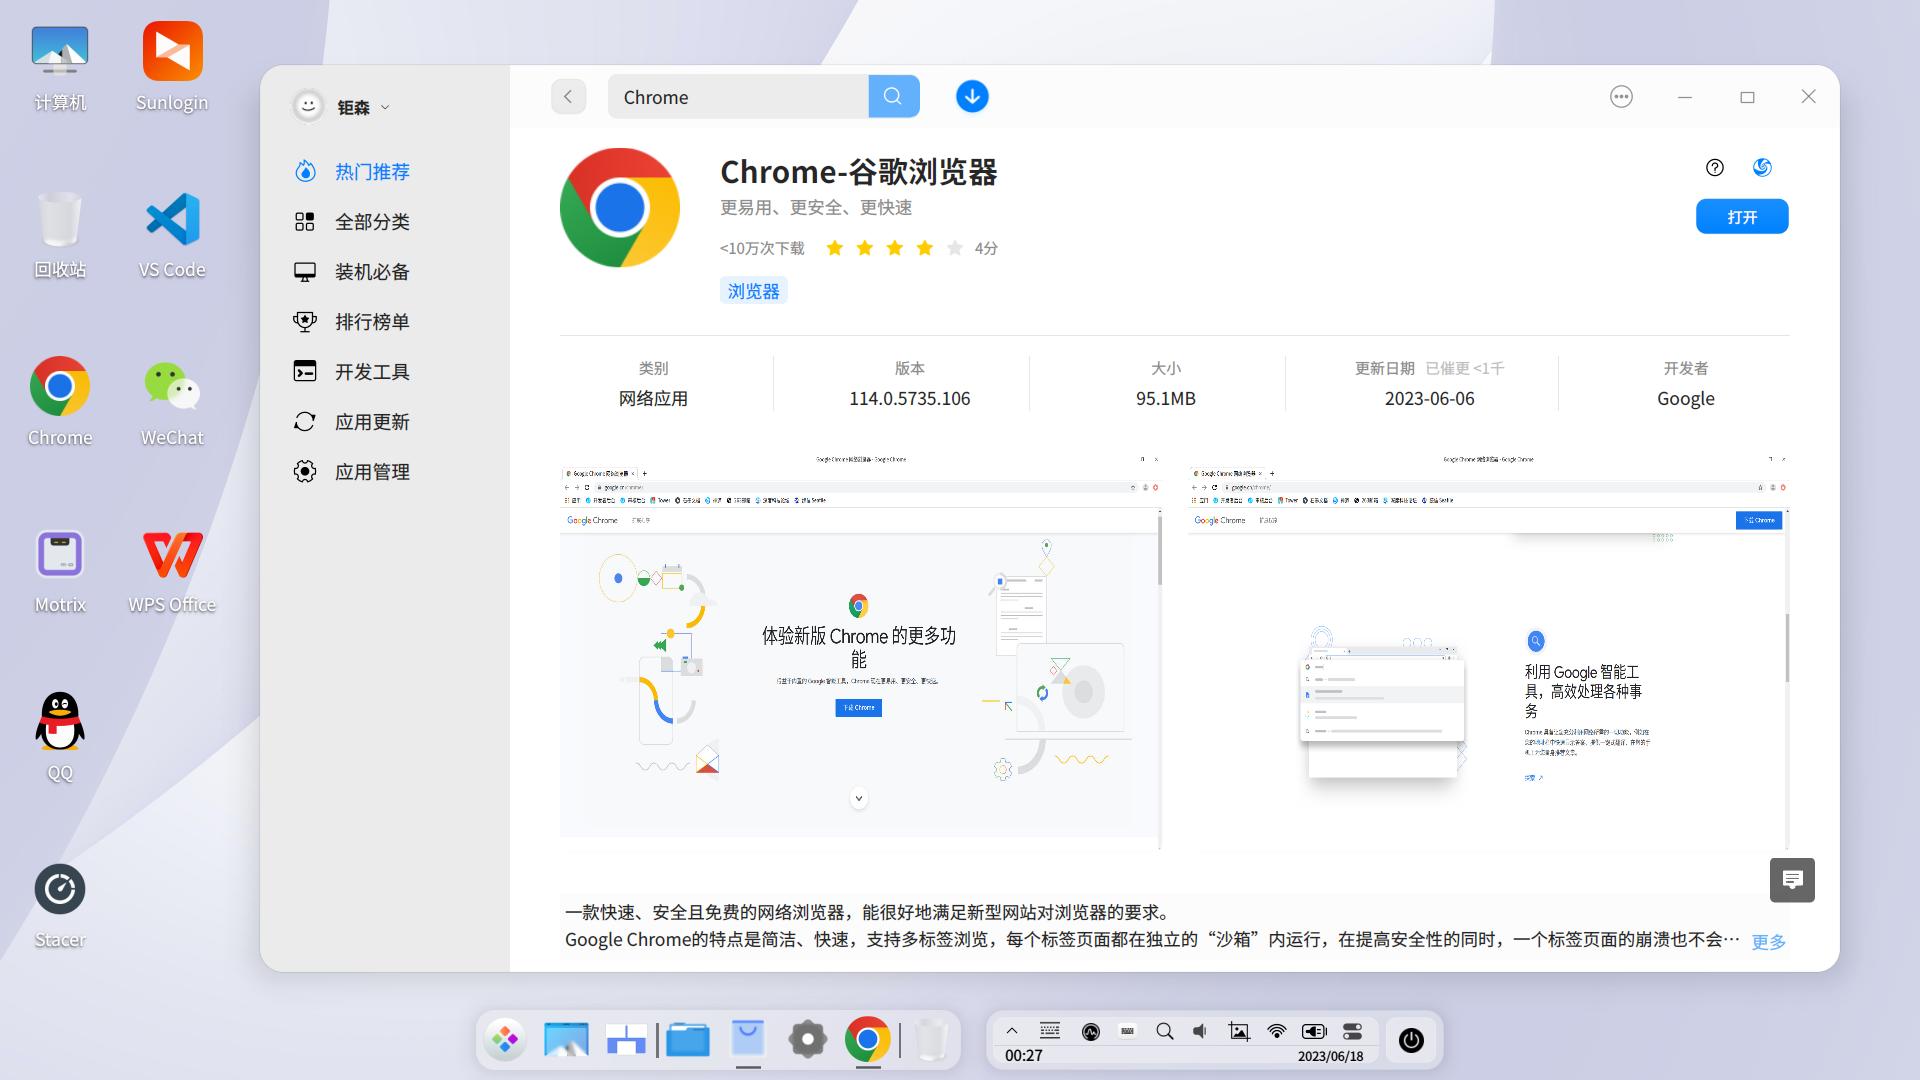 Chrome-谷歌浏览器